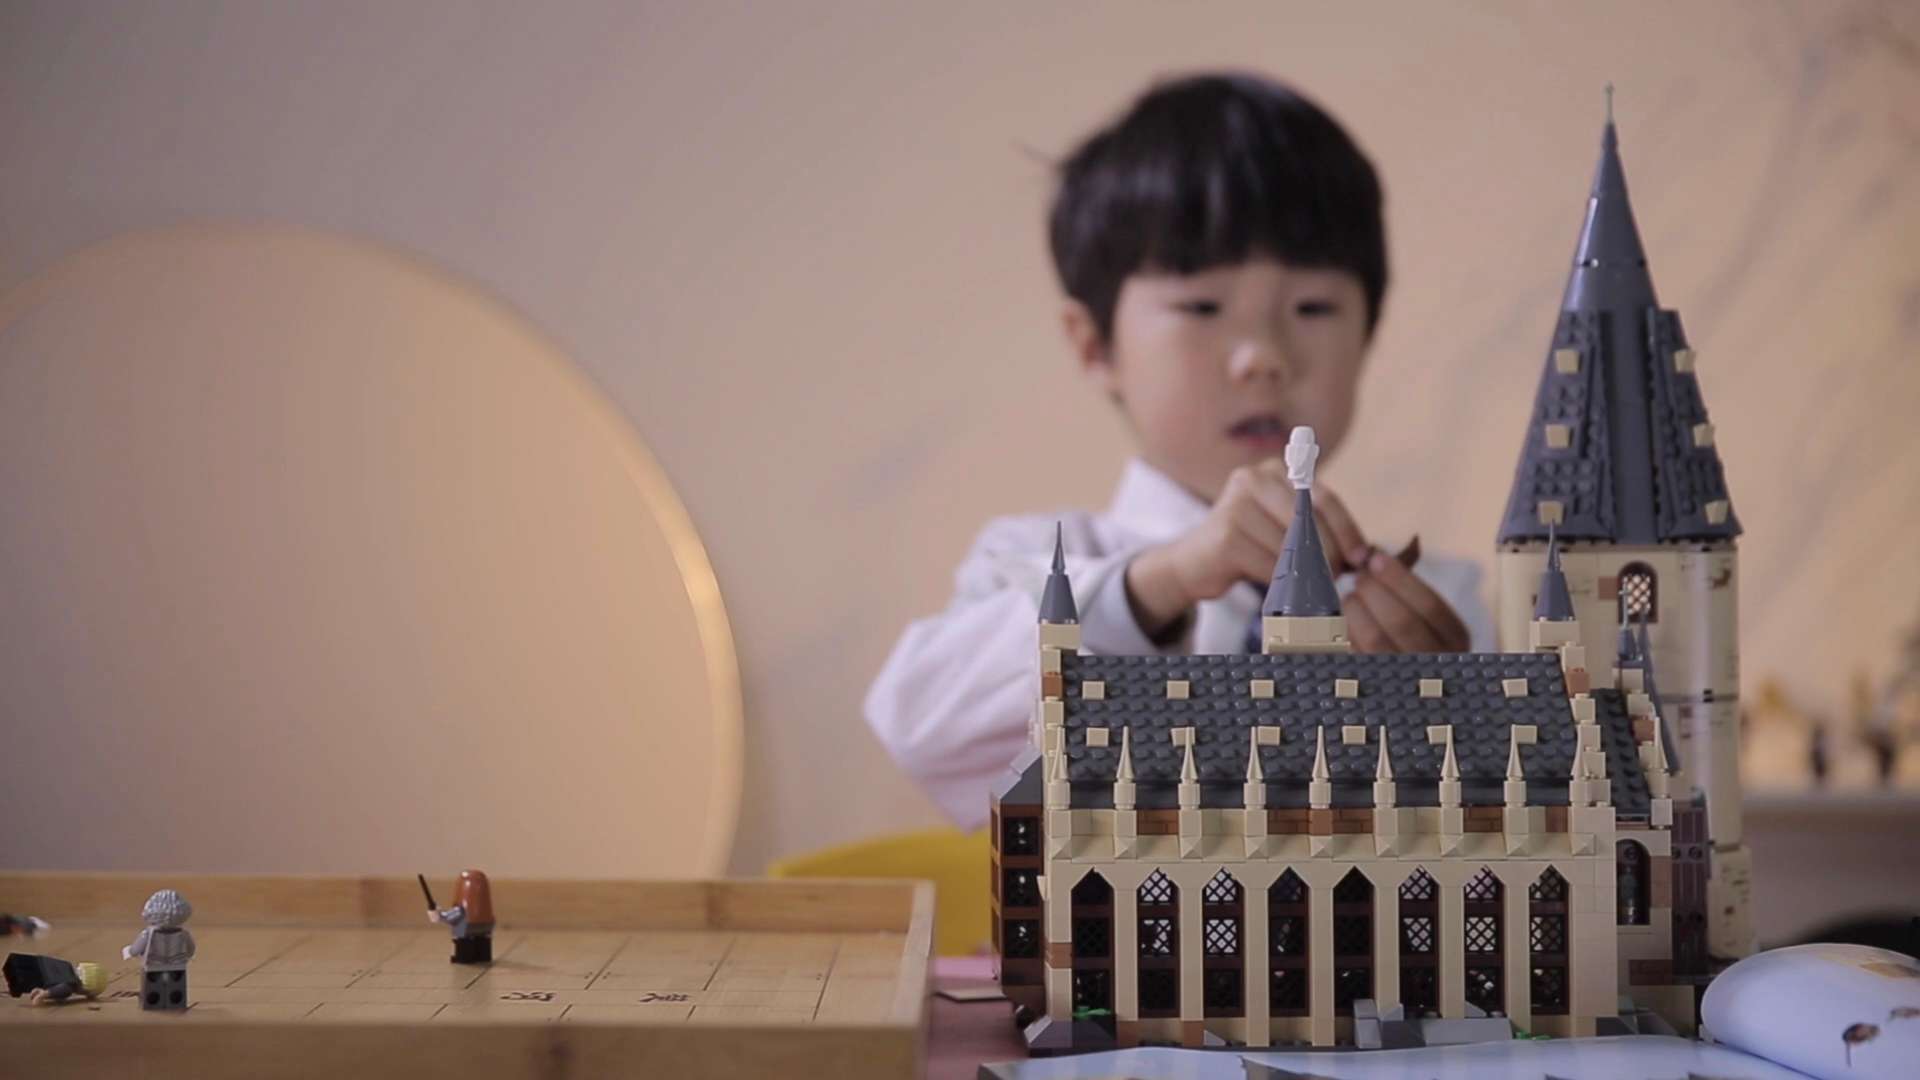 乐高积木哈利波特城堡 儿童玩具 逐格拍摄